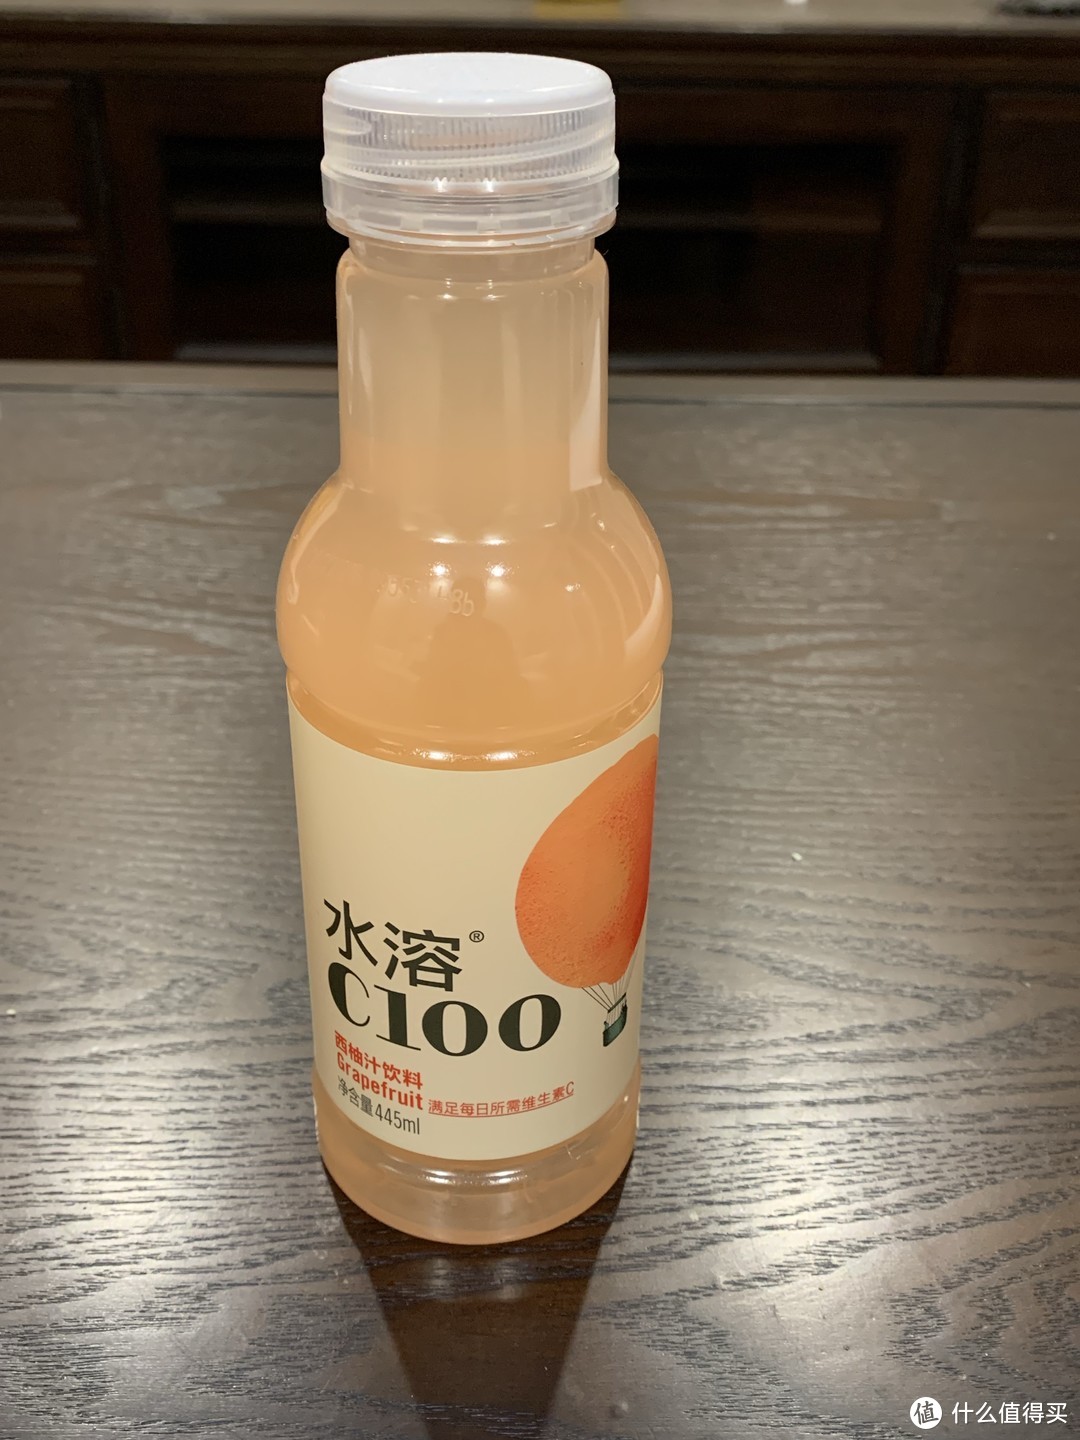 水溶c100能补充维生素的饮料。